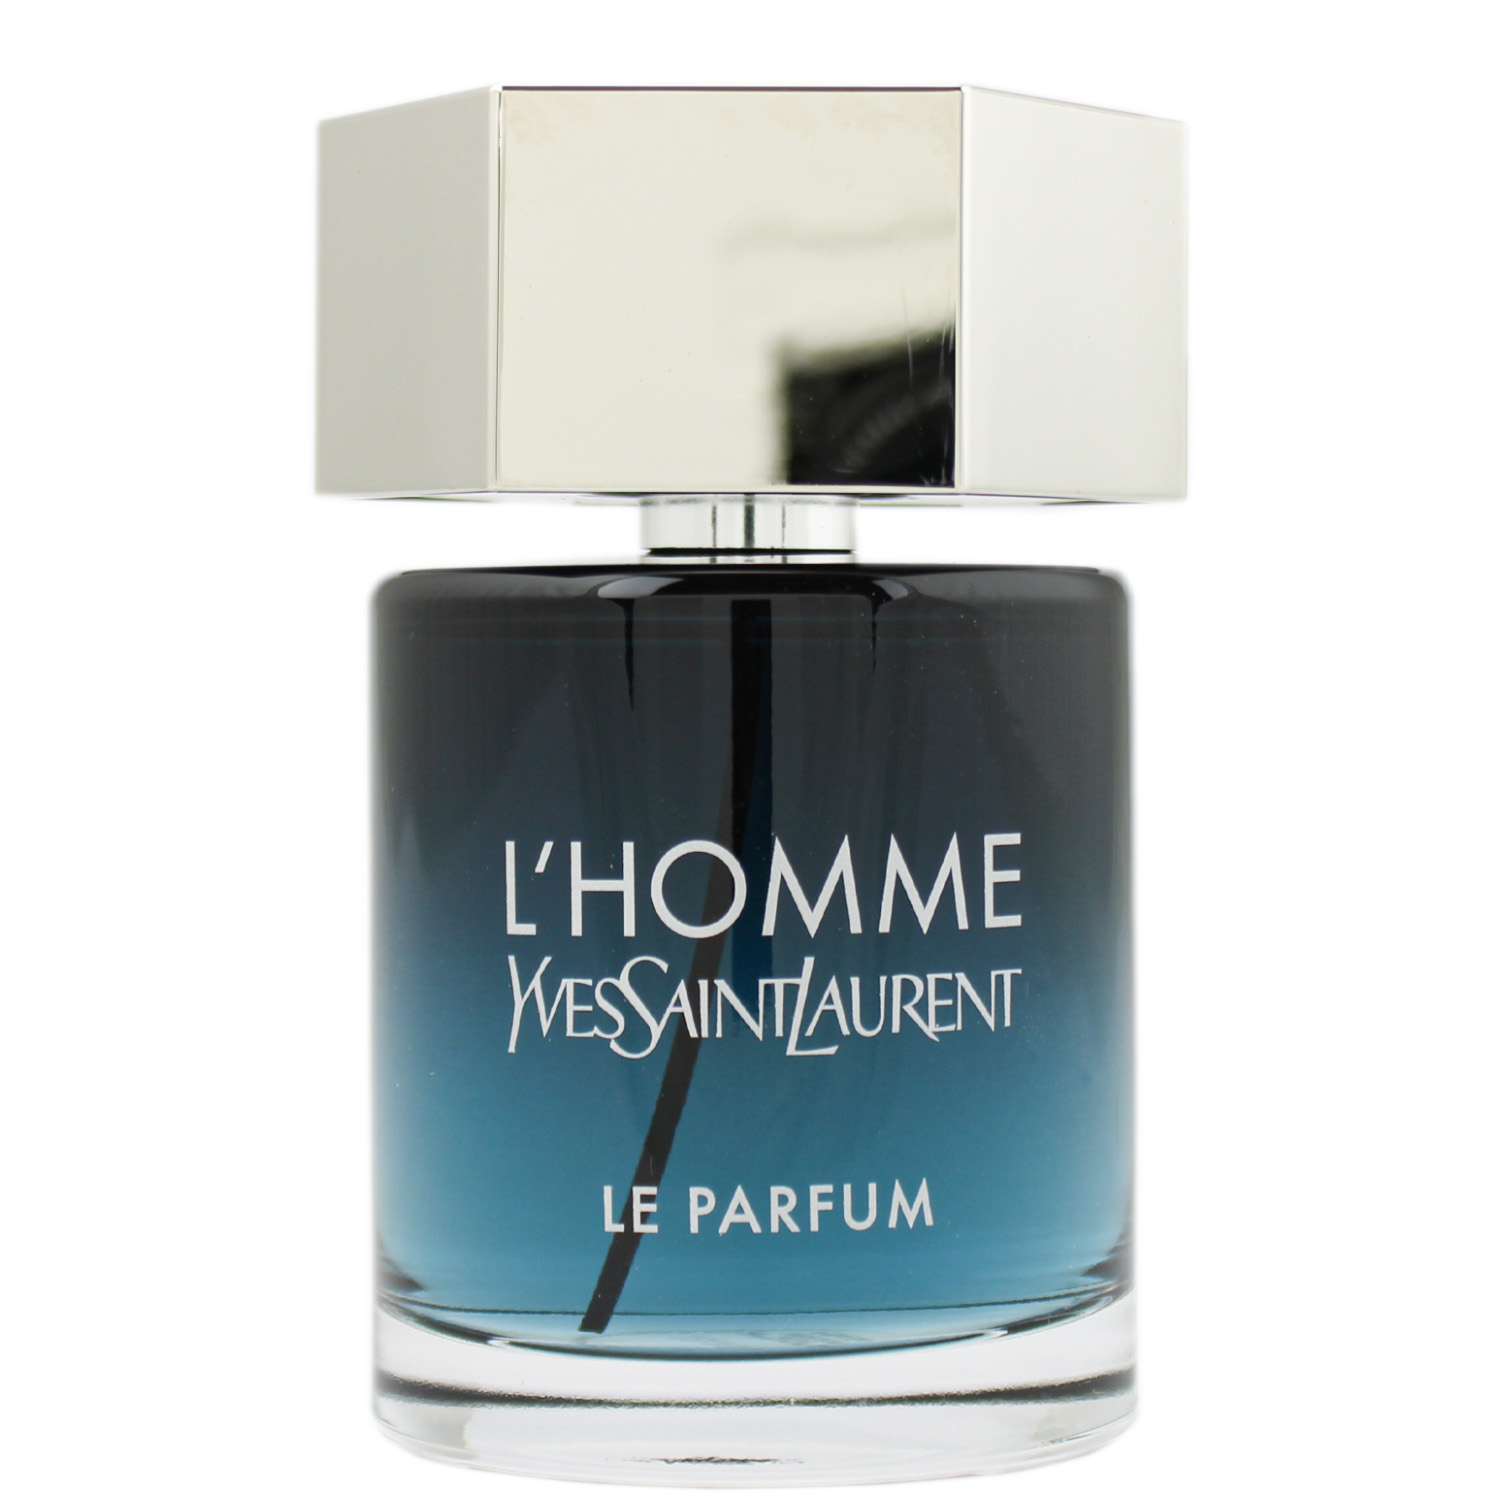 Yves Saint Laurent L' Homme Le Parfum 100ml